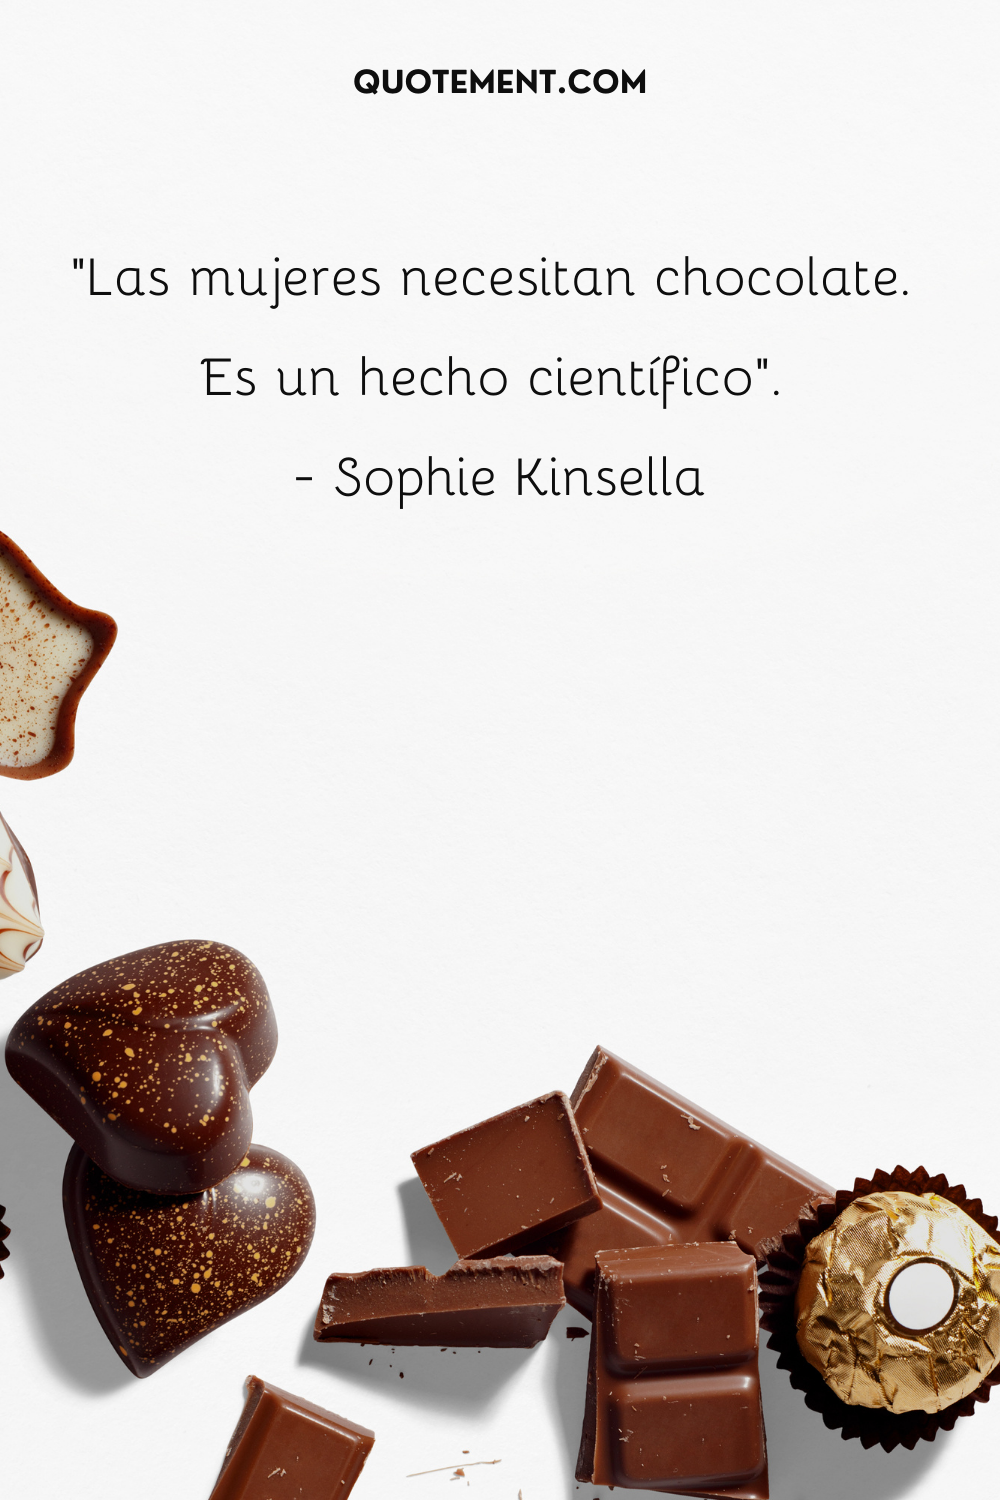 "Las mujeres necesitan chocolate. Es un hecho científico". - Sophie Kinsella